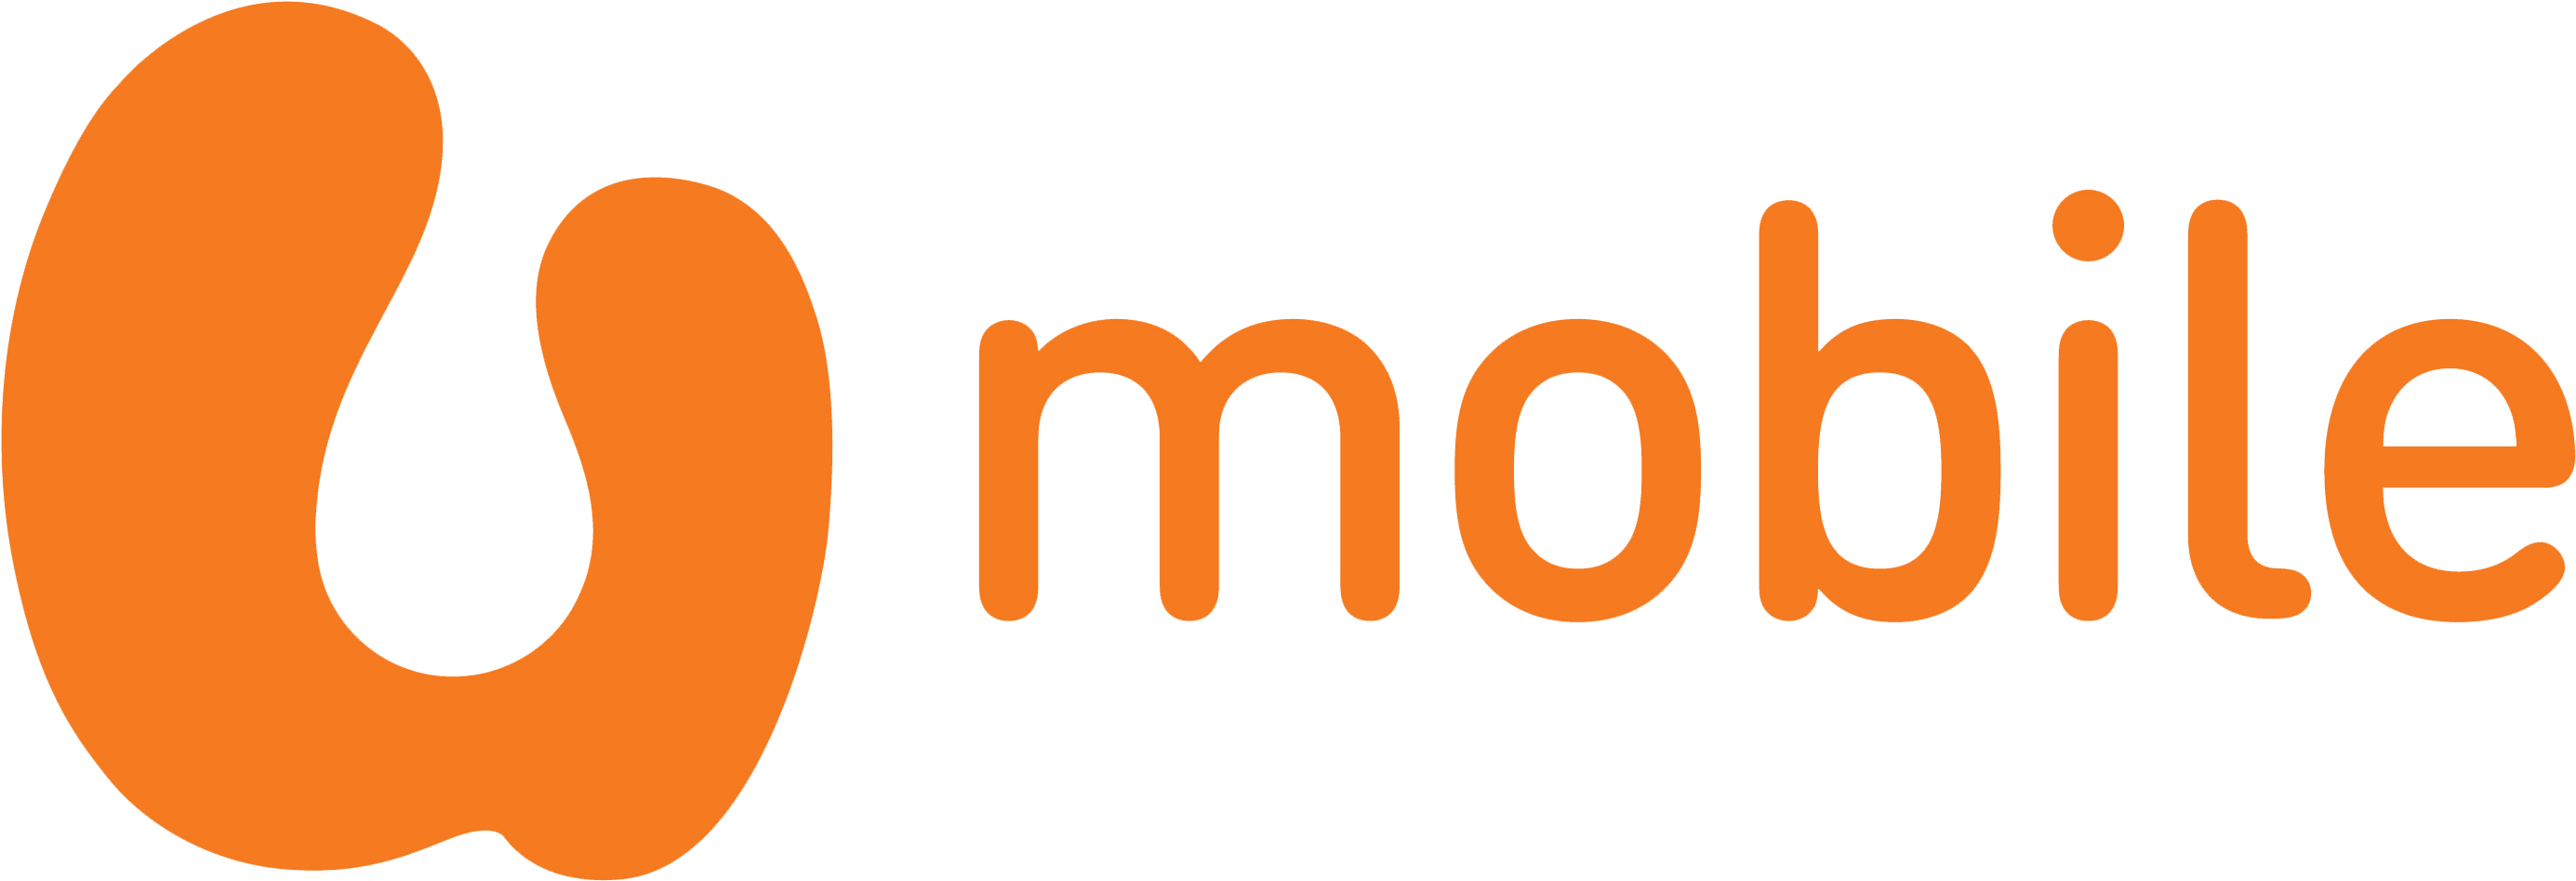 Orange Mobile Logo Png - U Mobile Logo Png (2819x996)